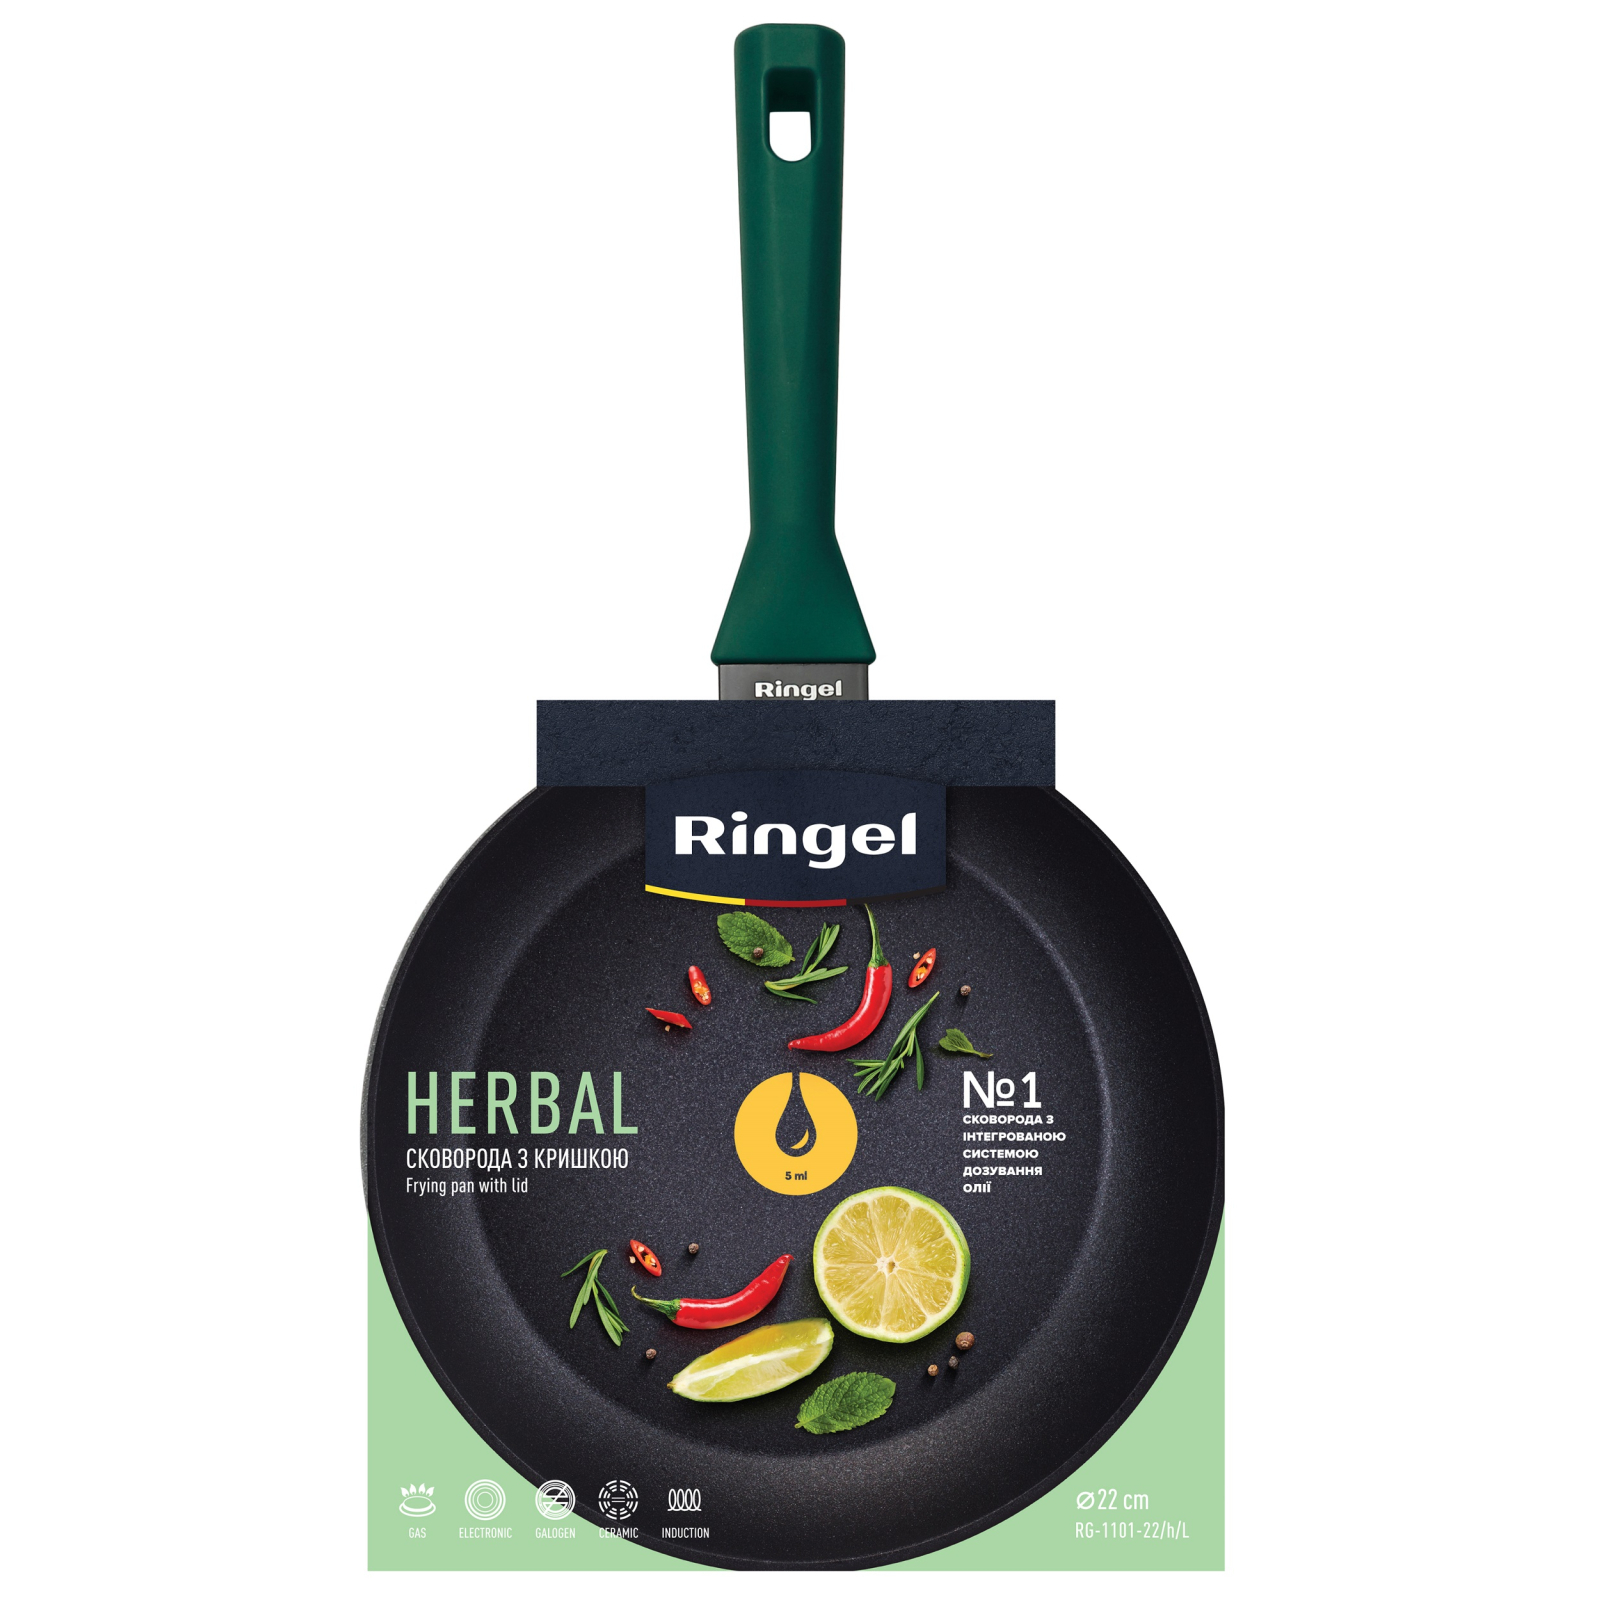 Сковорода Ringel Herbal 22 см (RG-1101-22/h/L) зображення 2